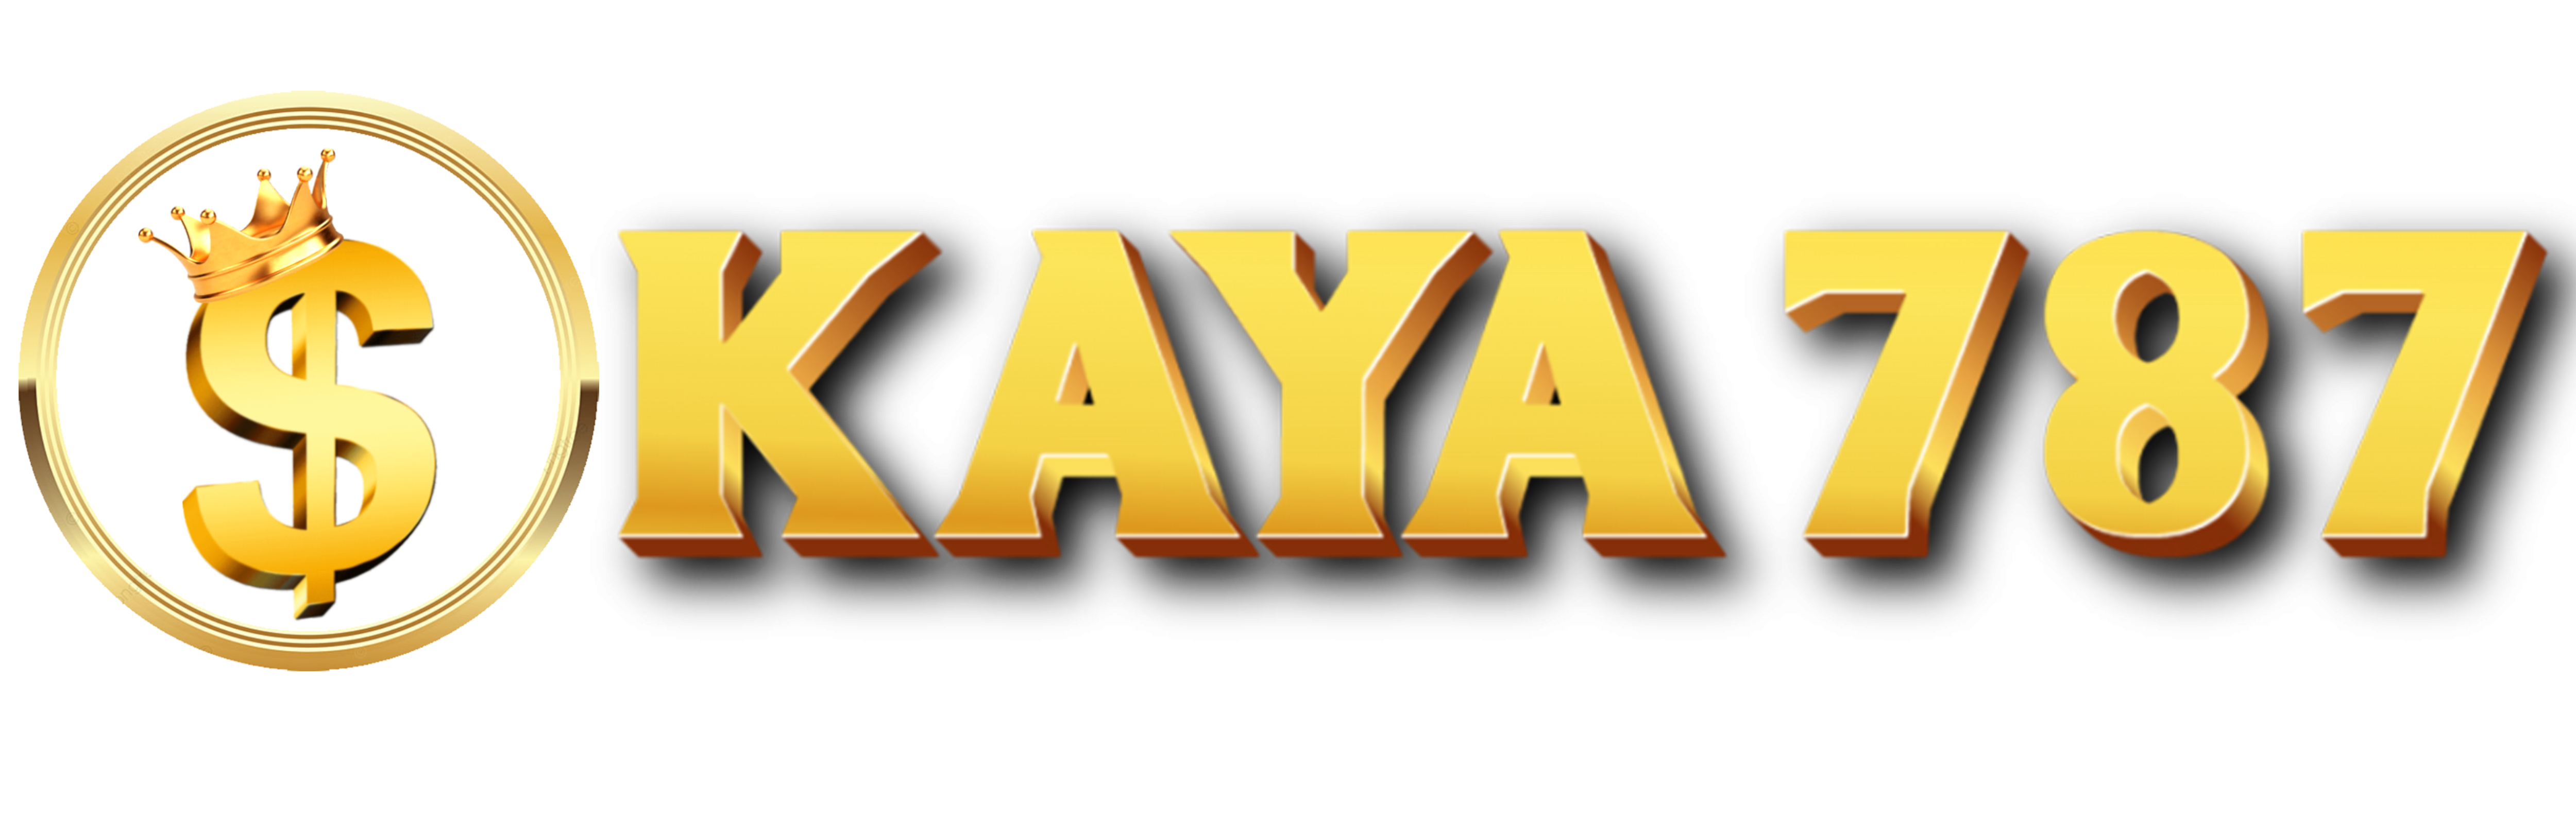 Kaya787